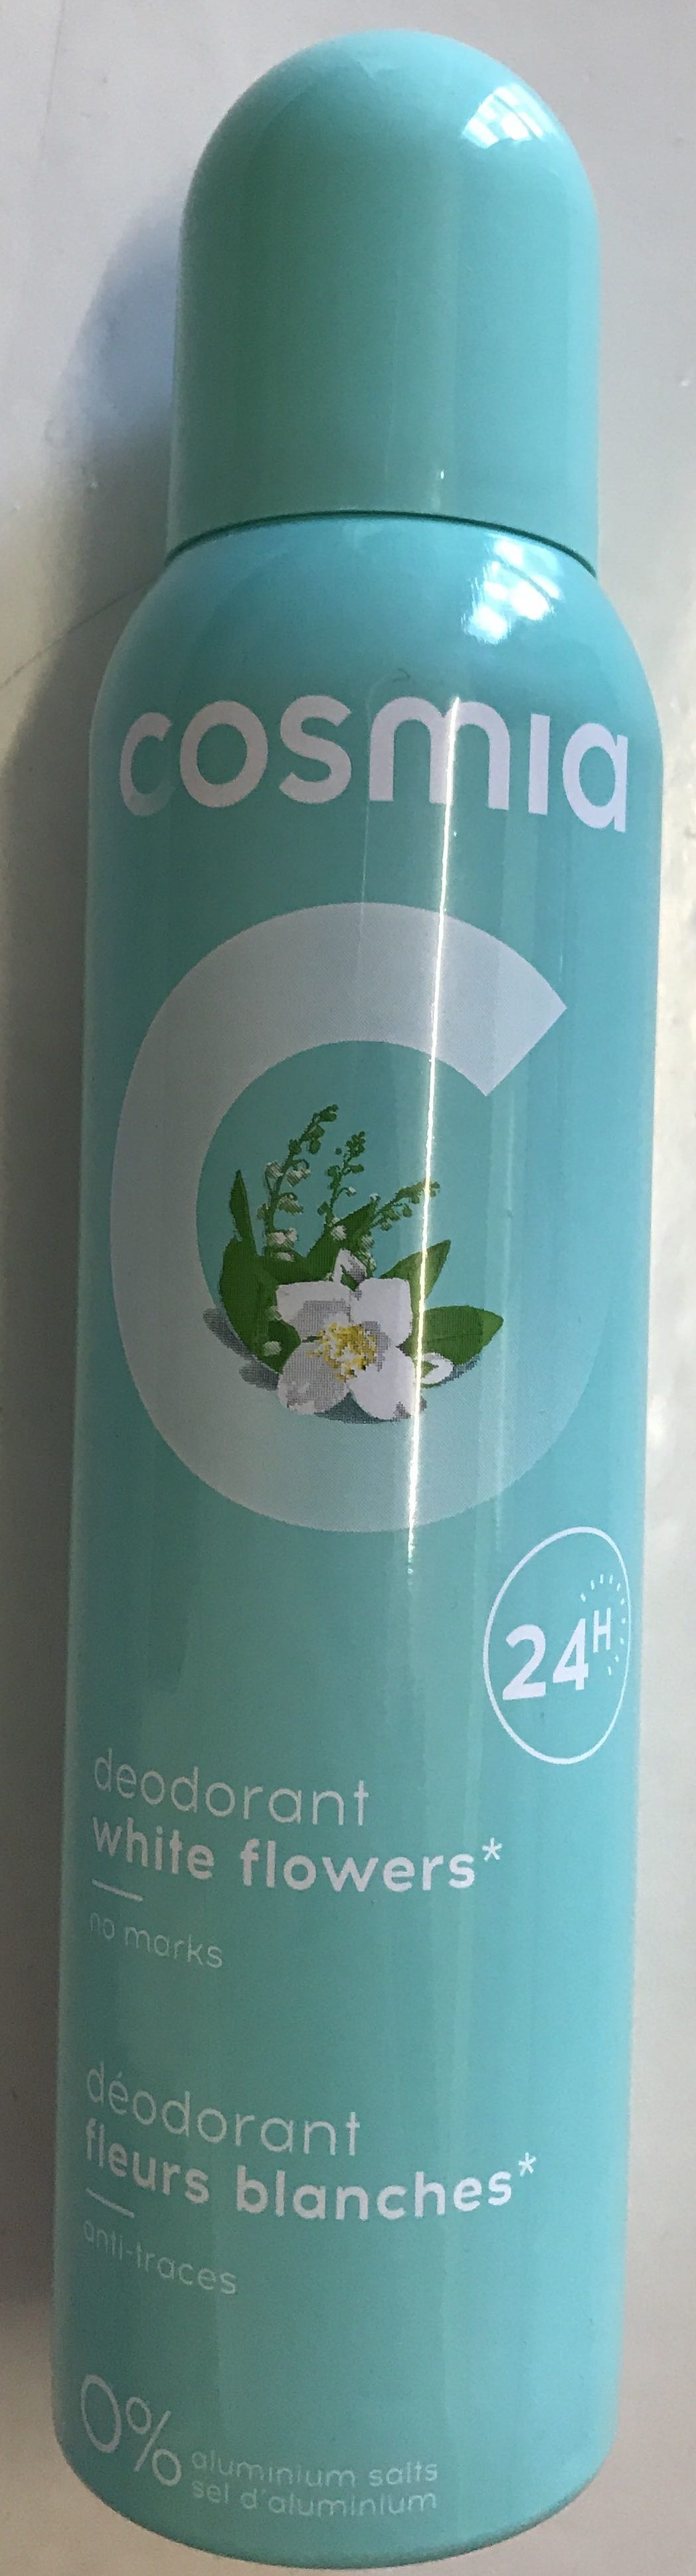 Déodorant fleurs blanches 24H - Продукт - fr